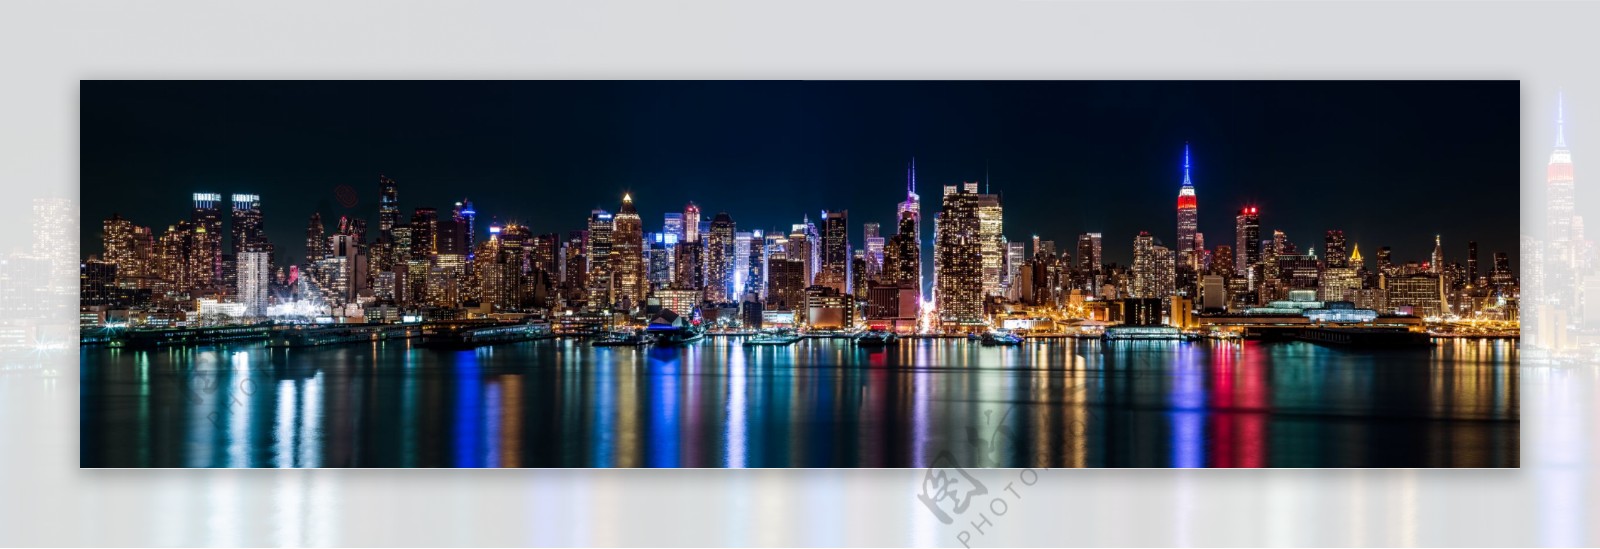 纽约夜景横幅图片